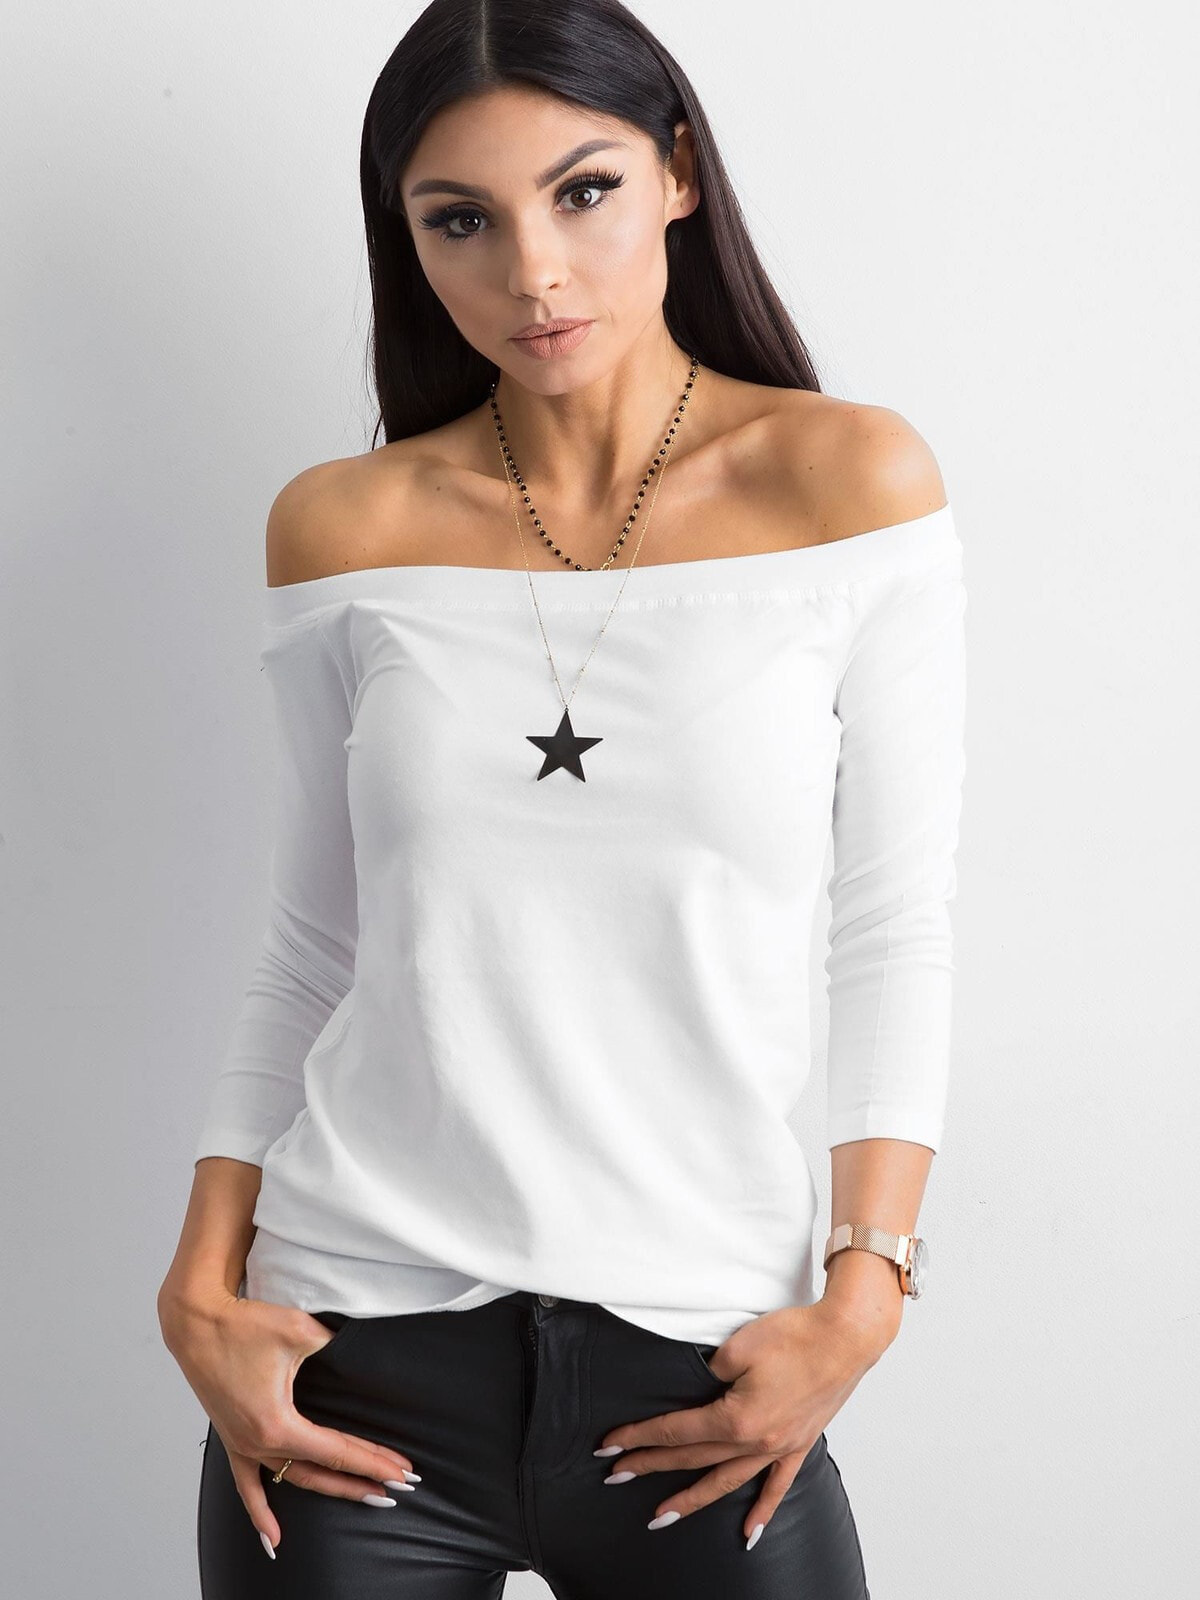 Женская блузка белая с открытыми плечами Factory Price